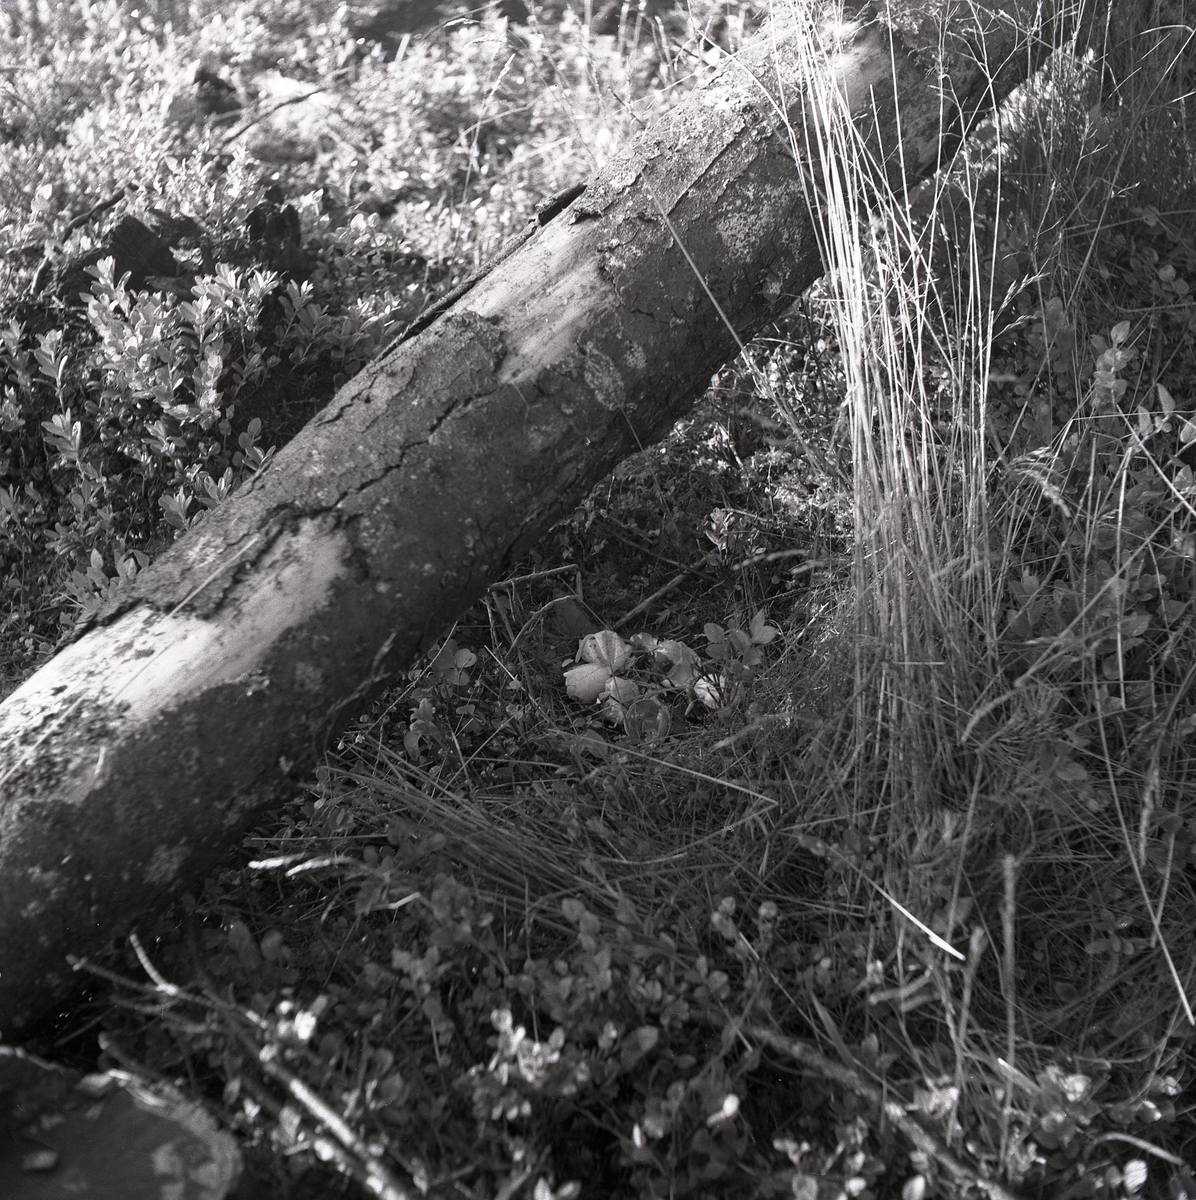 Nedfallen trädstam som ligger vid ett tjäderbo med ägg i skogen, Sunnanhed 29 juni 1954.